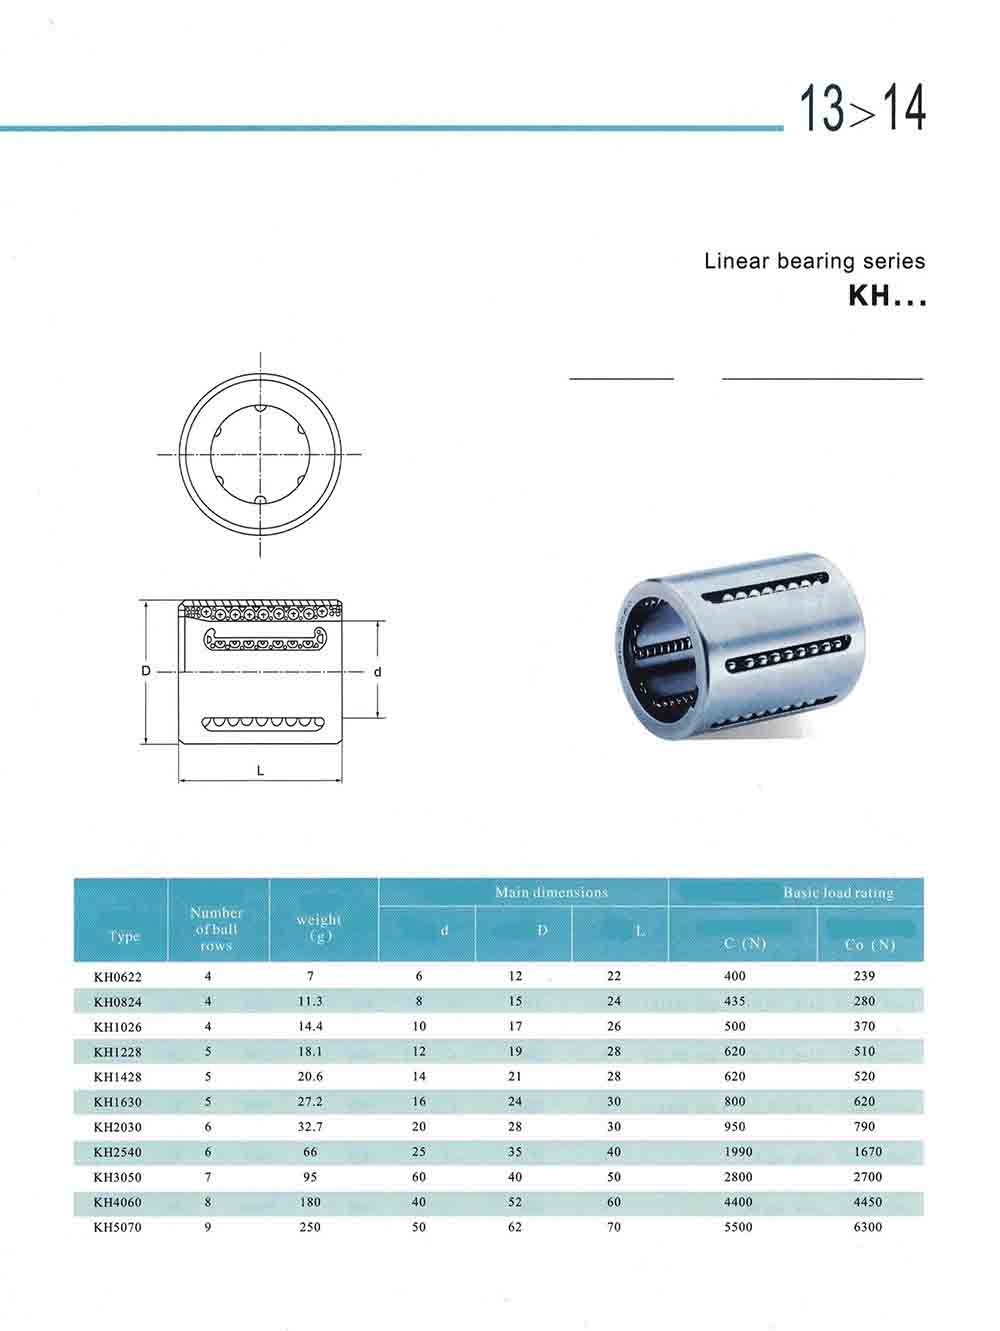 small linear bearings datasheet